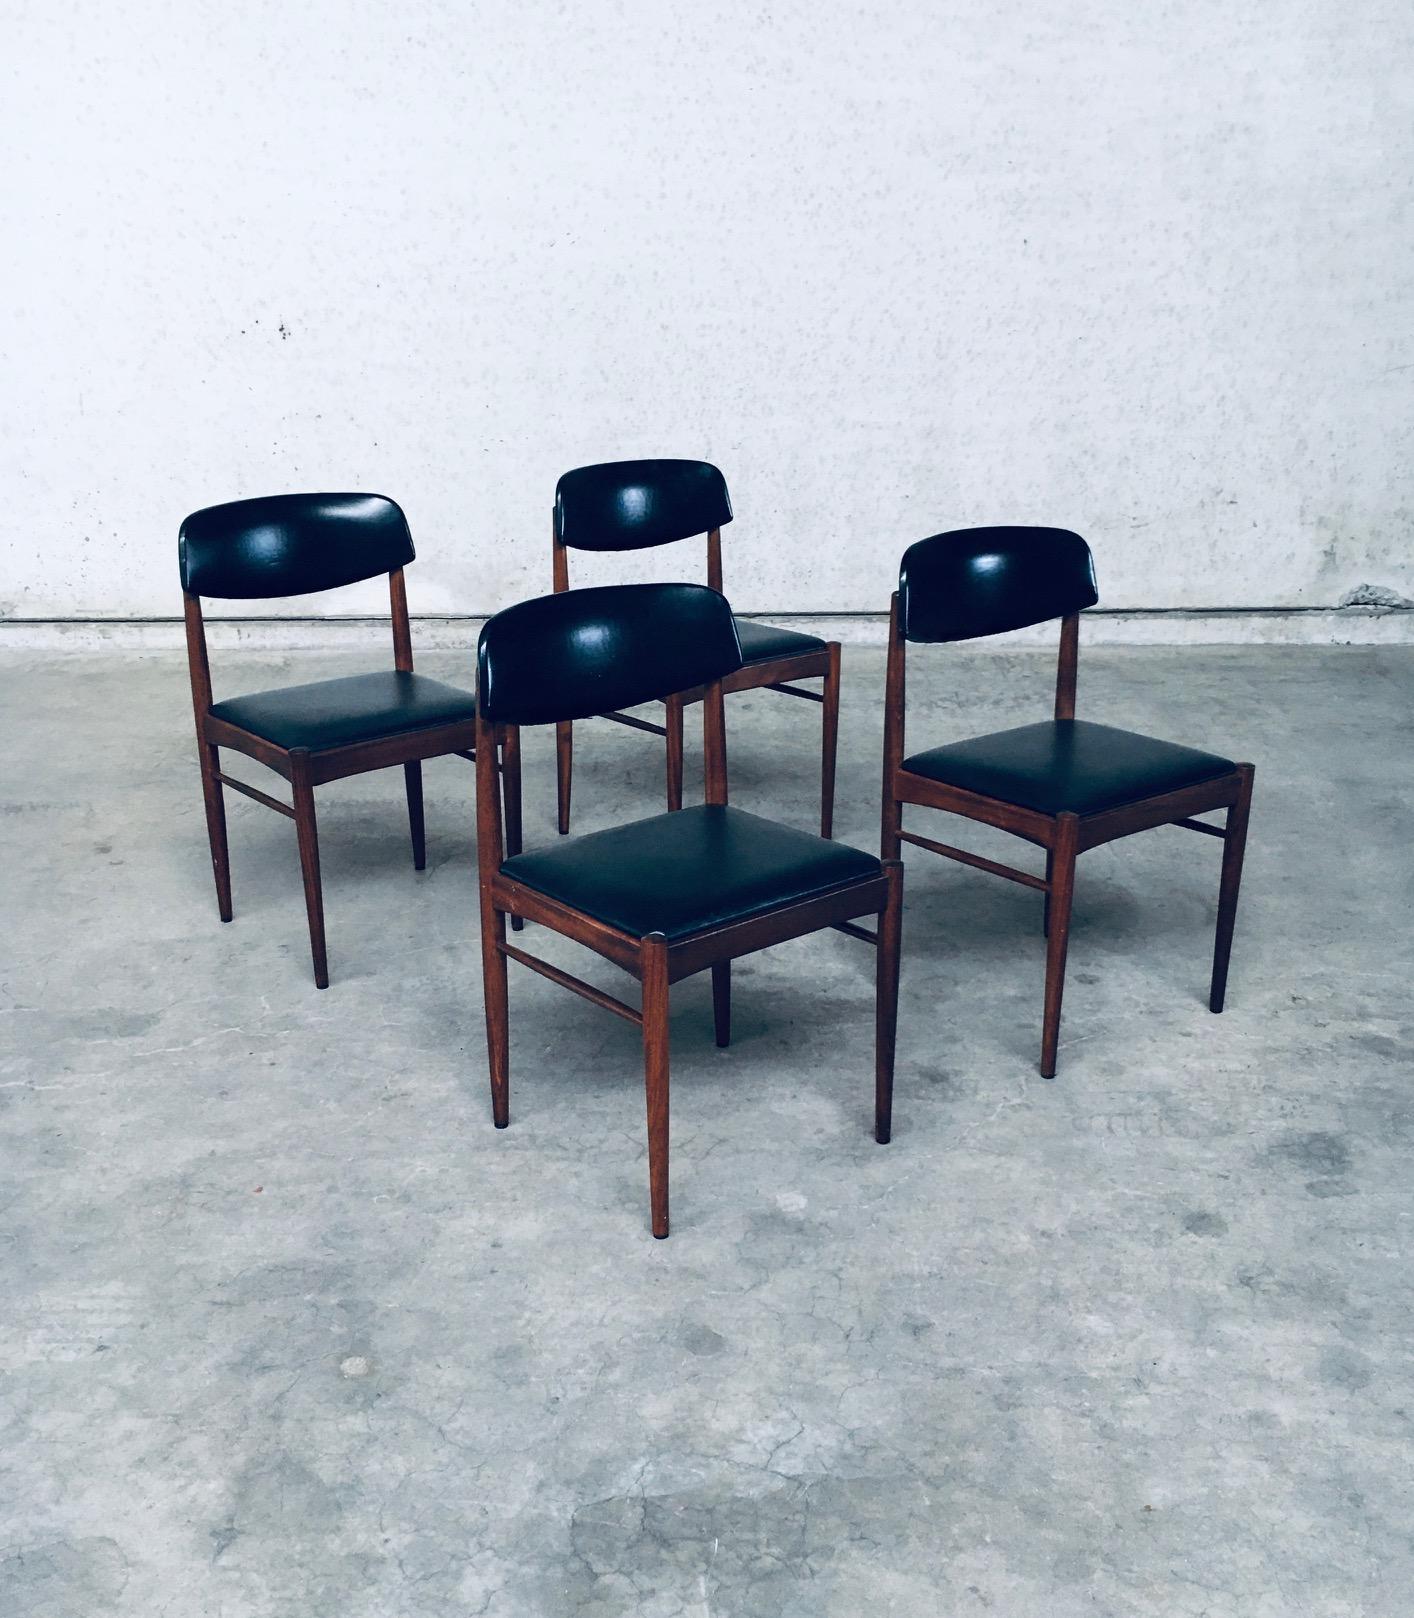 Vintage Midcentury Modern Dutch Design Dining Chair Satz von 4. Hergestellt in den Niederlanden, 1960er Jahre. Teak- oder Wengeholz mit Sitz und Rückenlehne aus schwarzem Skai-Stoff. Schöne Form und sehr gut gemachte Stühle. Alle Stühle sind in sehr